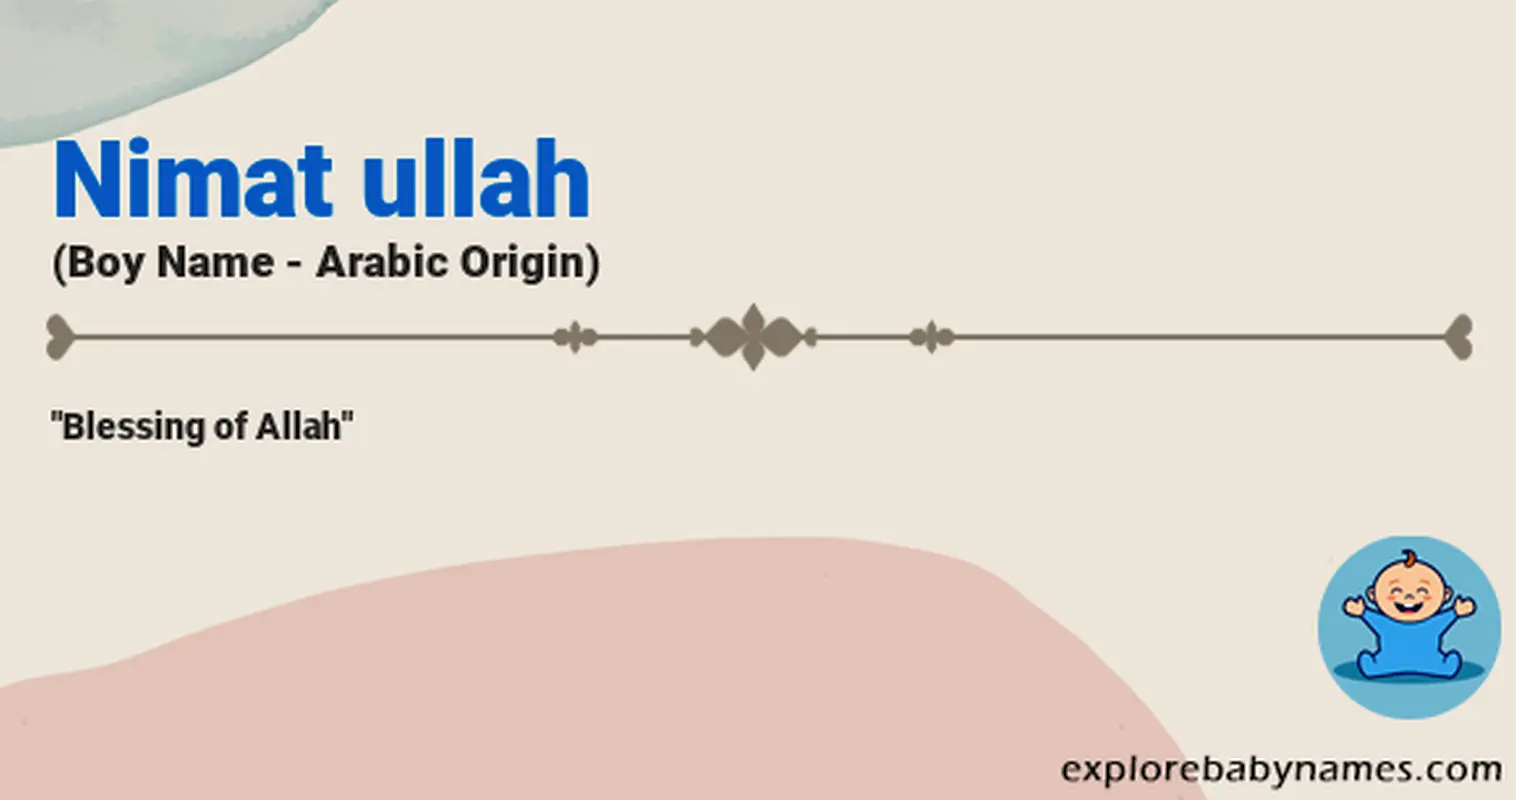 Meaning of Nimat ullah